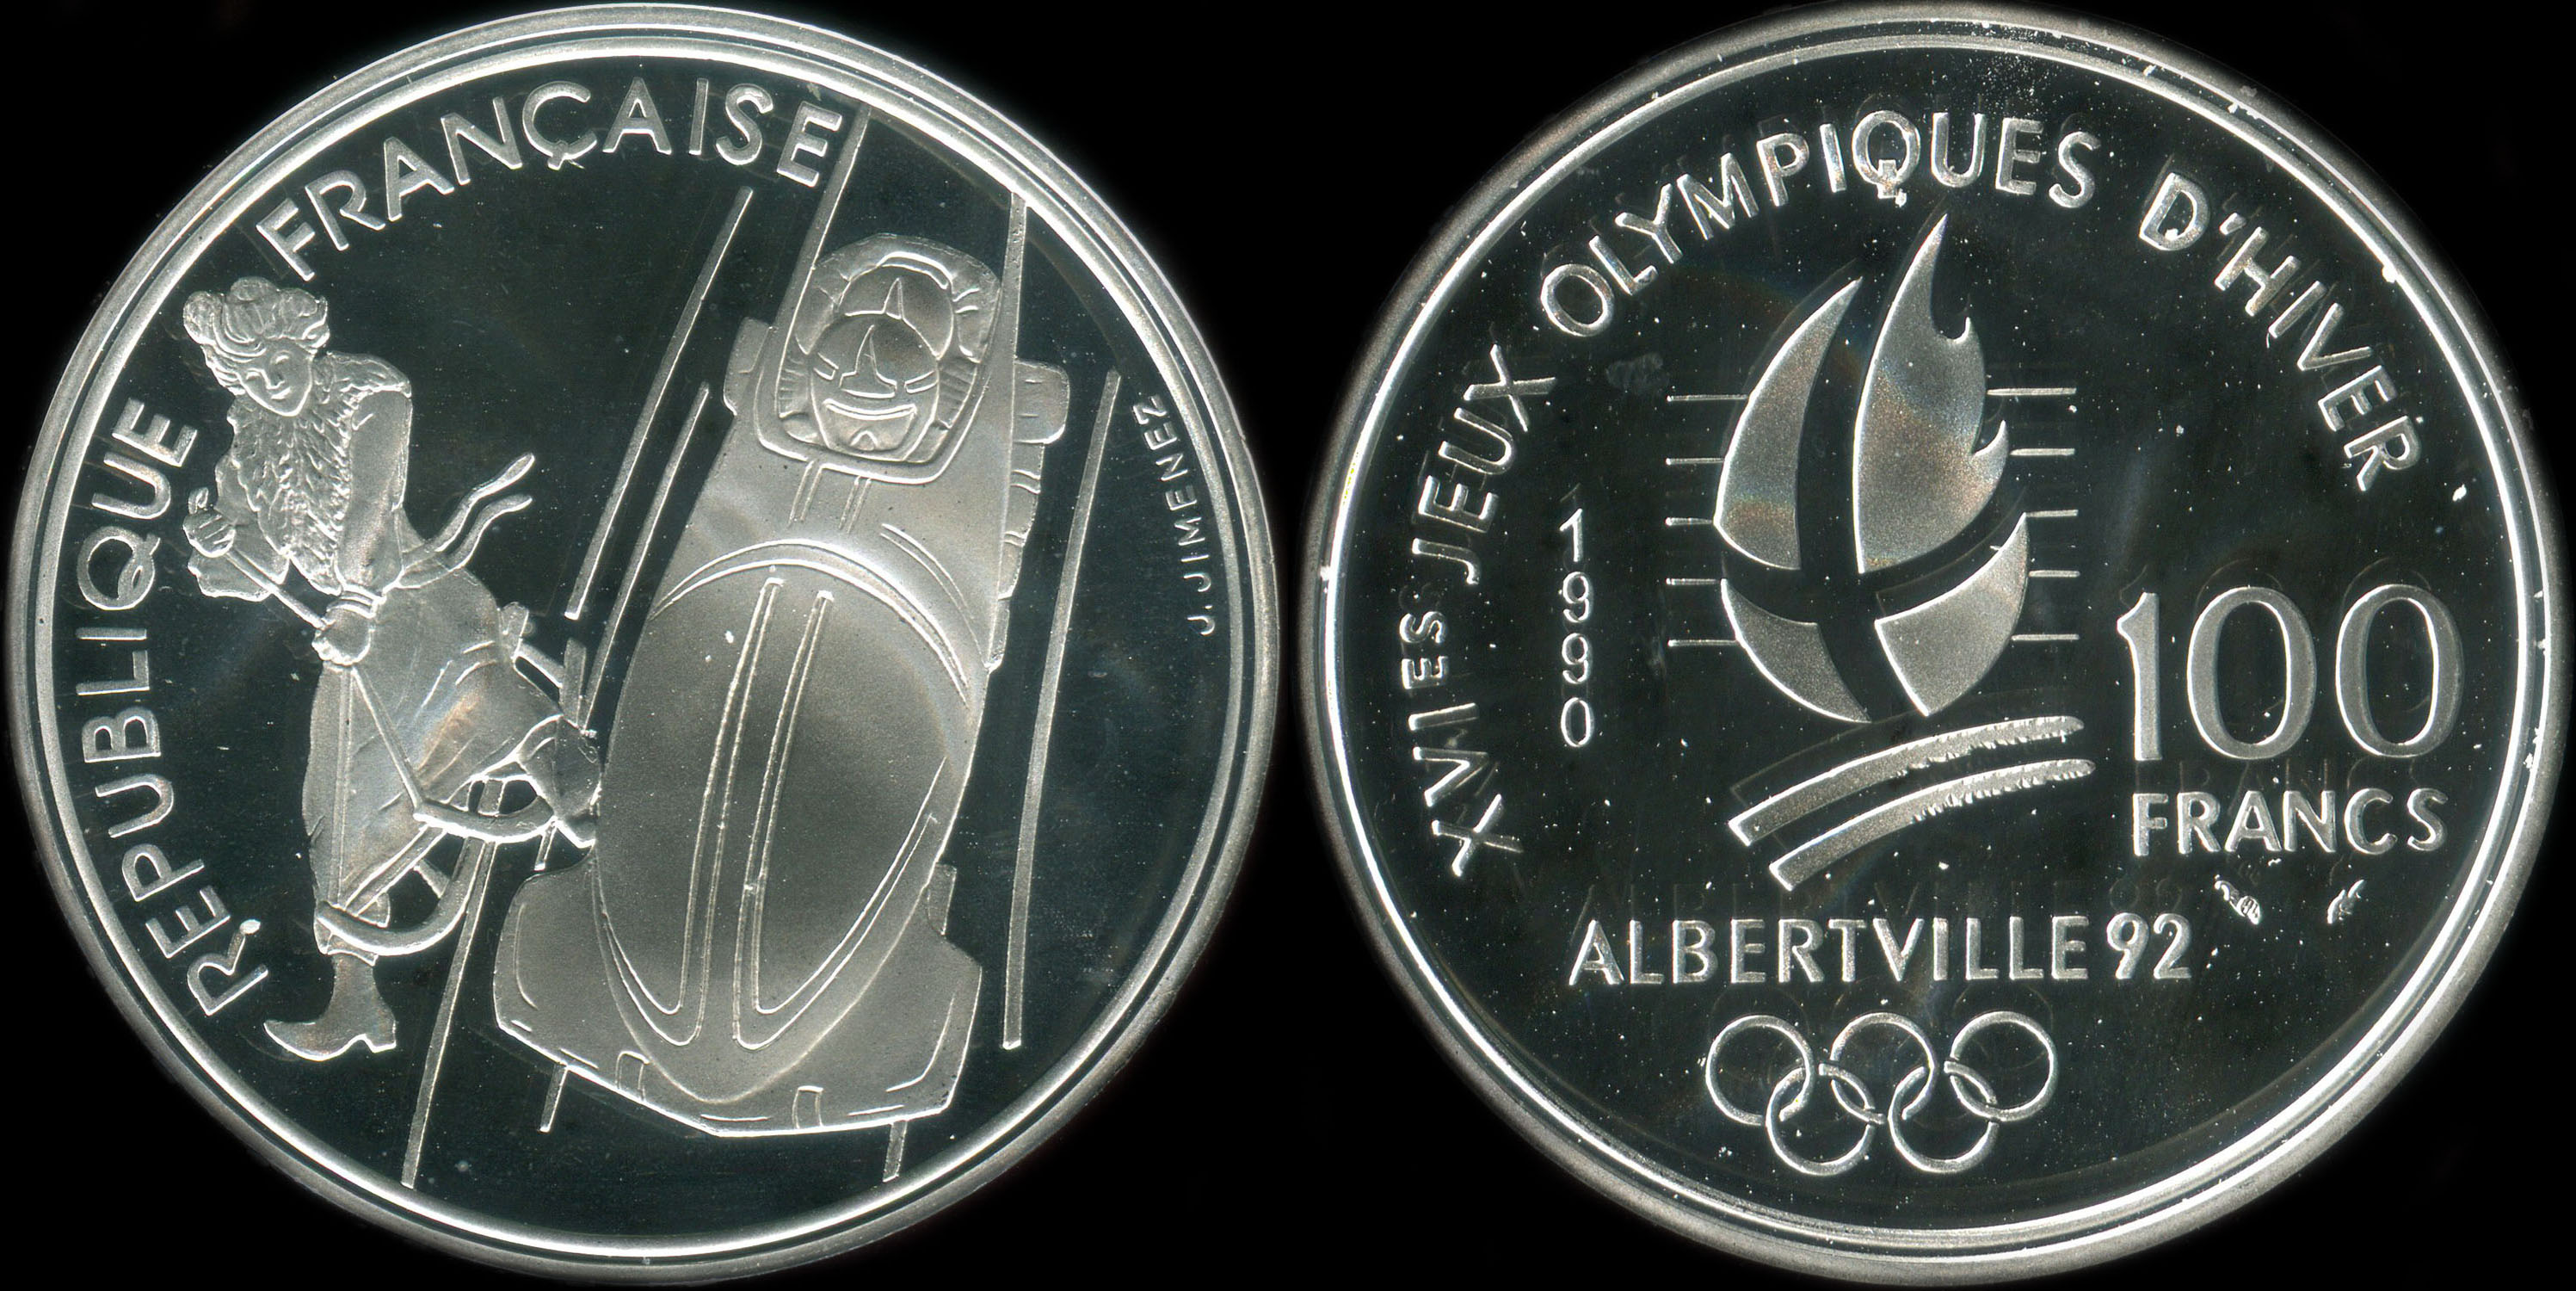 Pièce de 100 francs 1990 - XVIes Jeux Olympiques d'Hiver - Albertville 92 - Bobsleigh - Luge de la Belle Epoque